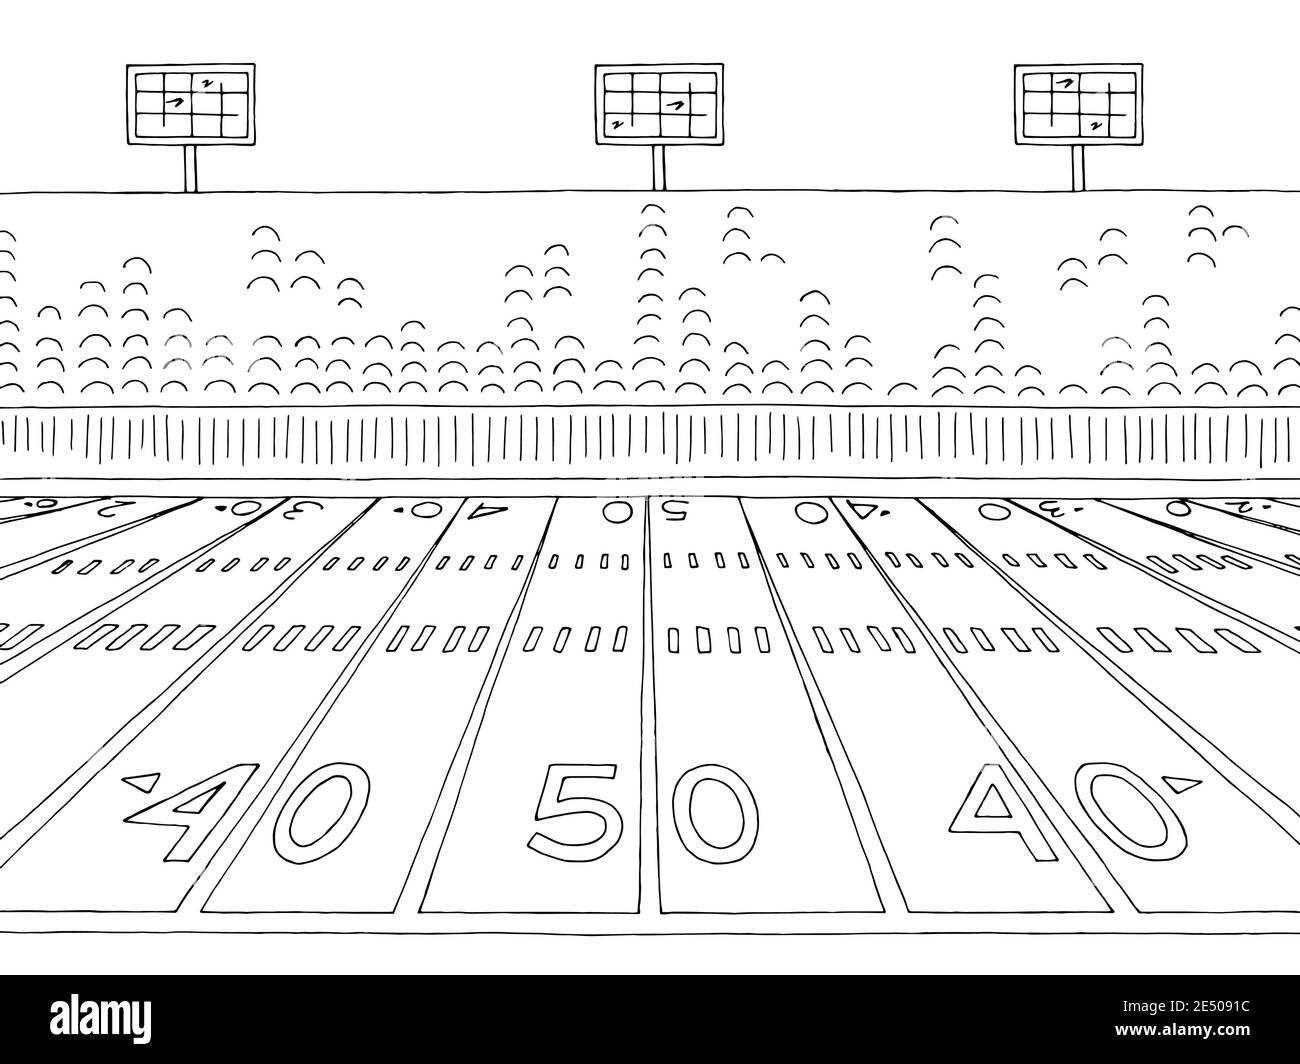 Soccer stadium sketch vector. Football or cricket stadium line drawing  illustration. Stock Vector | Adobe Stock